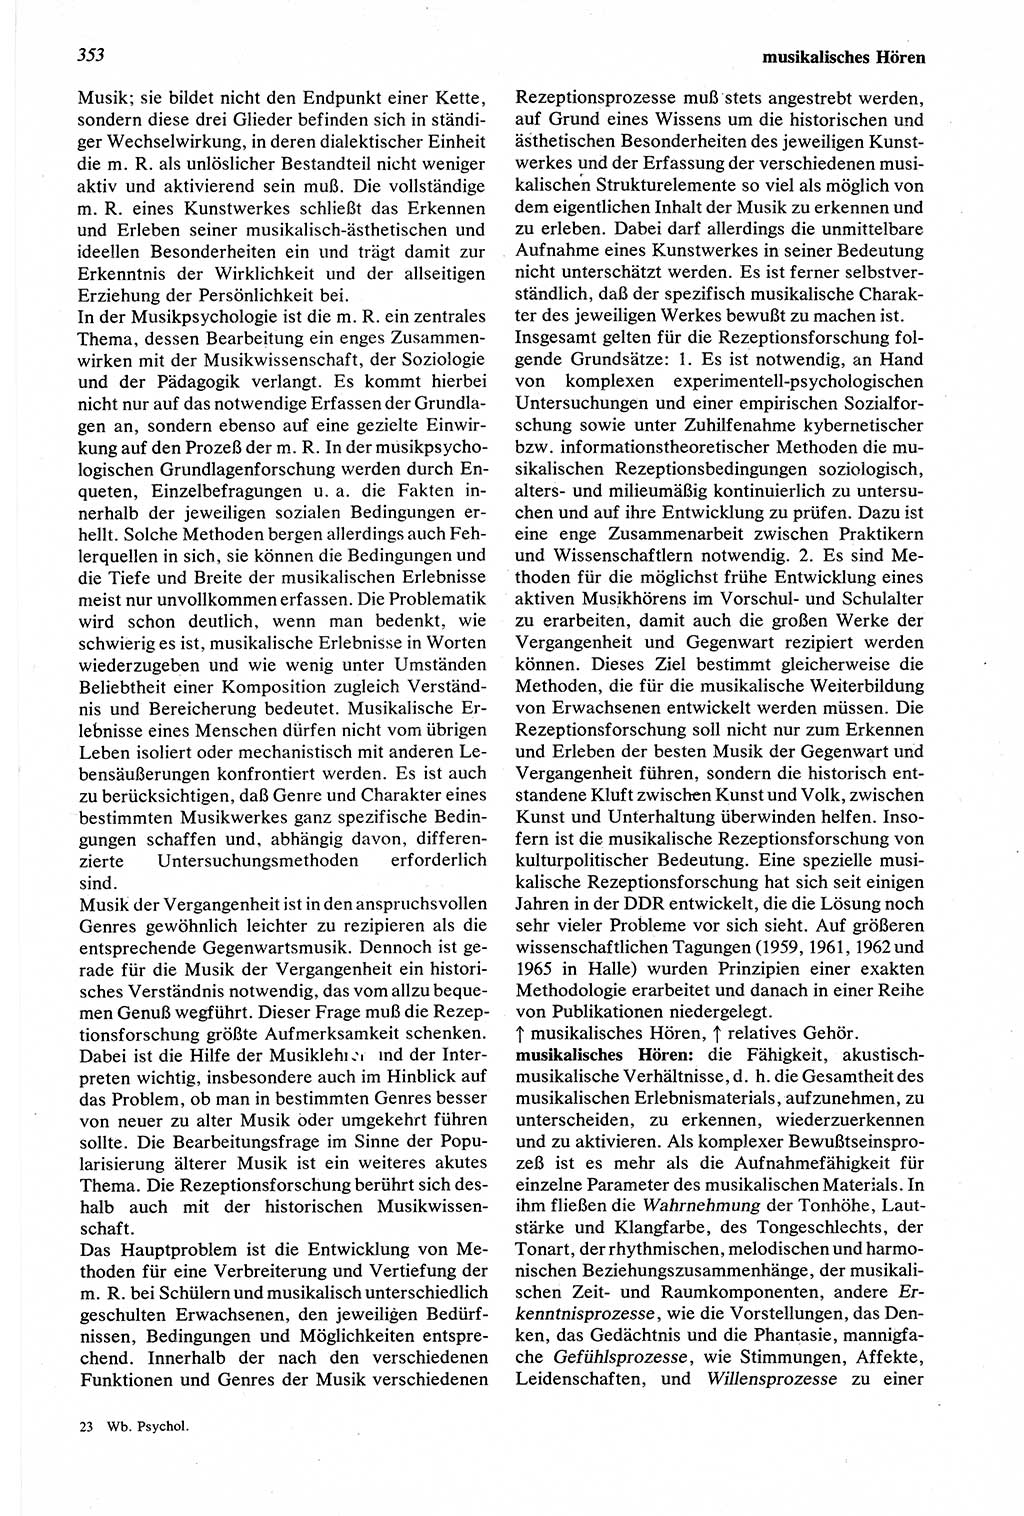 Wörterbuch der Psychologie [Deutsche Demokratische Republik (DDR)] 1976, Seite 353 (Wb. Psych. DDR 1976, S. 353)